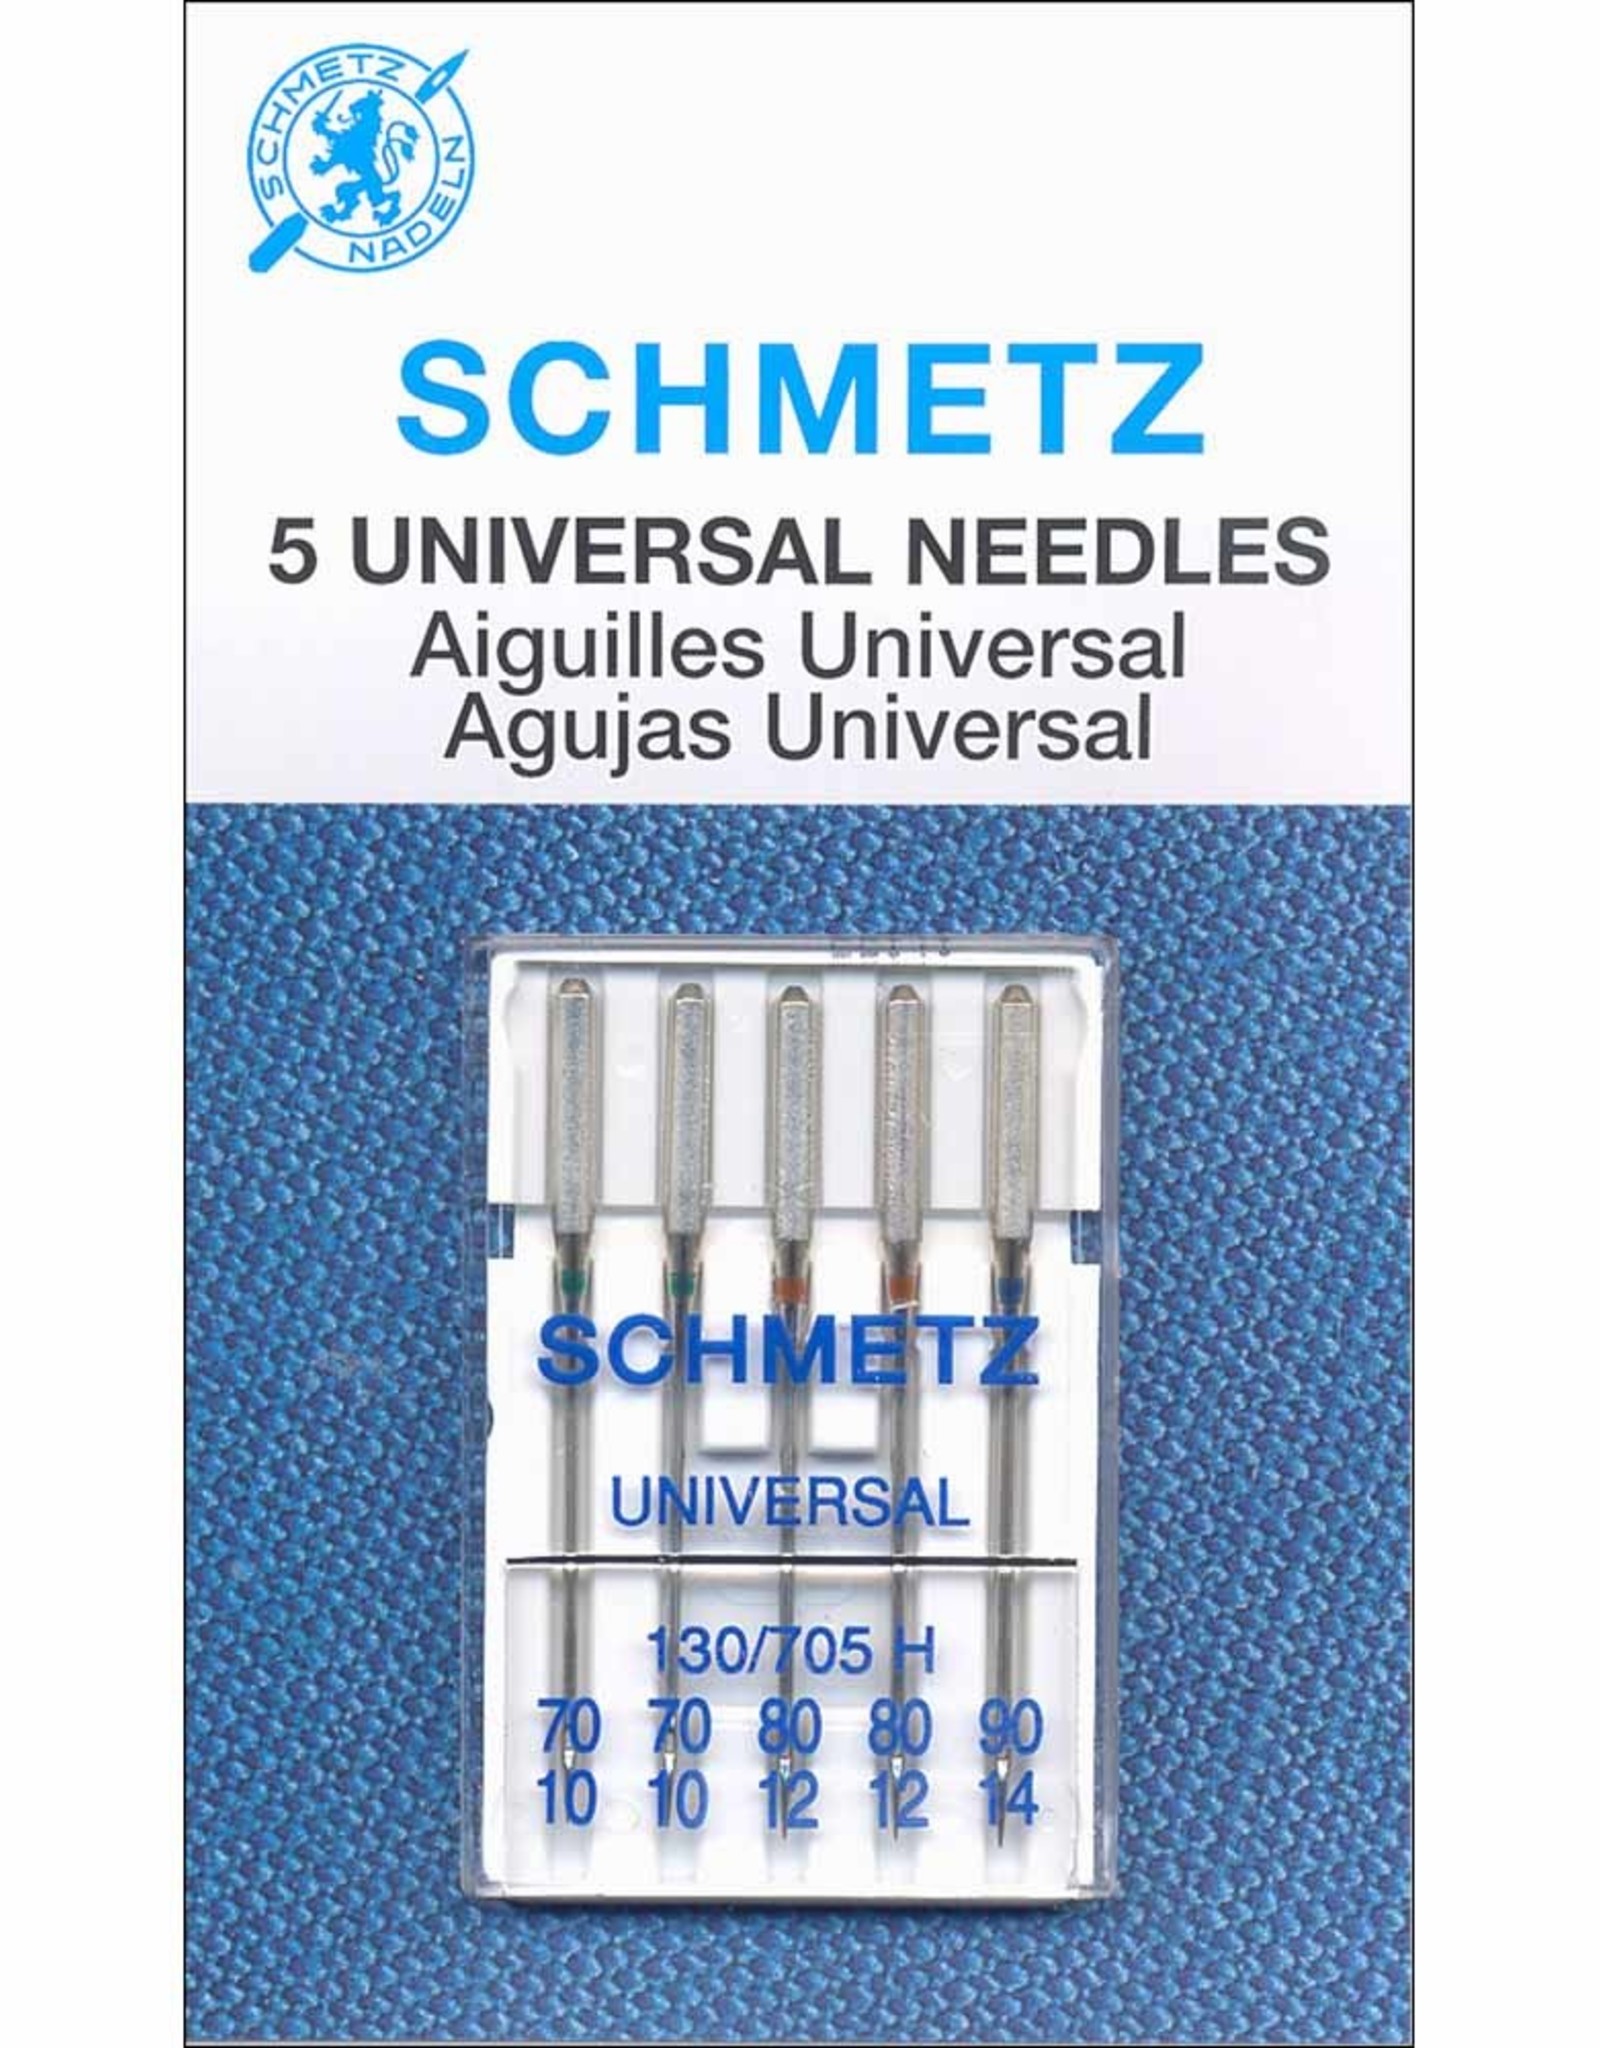 Schmetz Schmetz Universal Needles 70-90